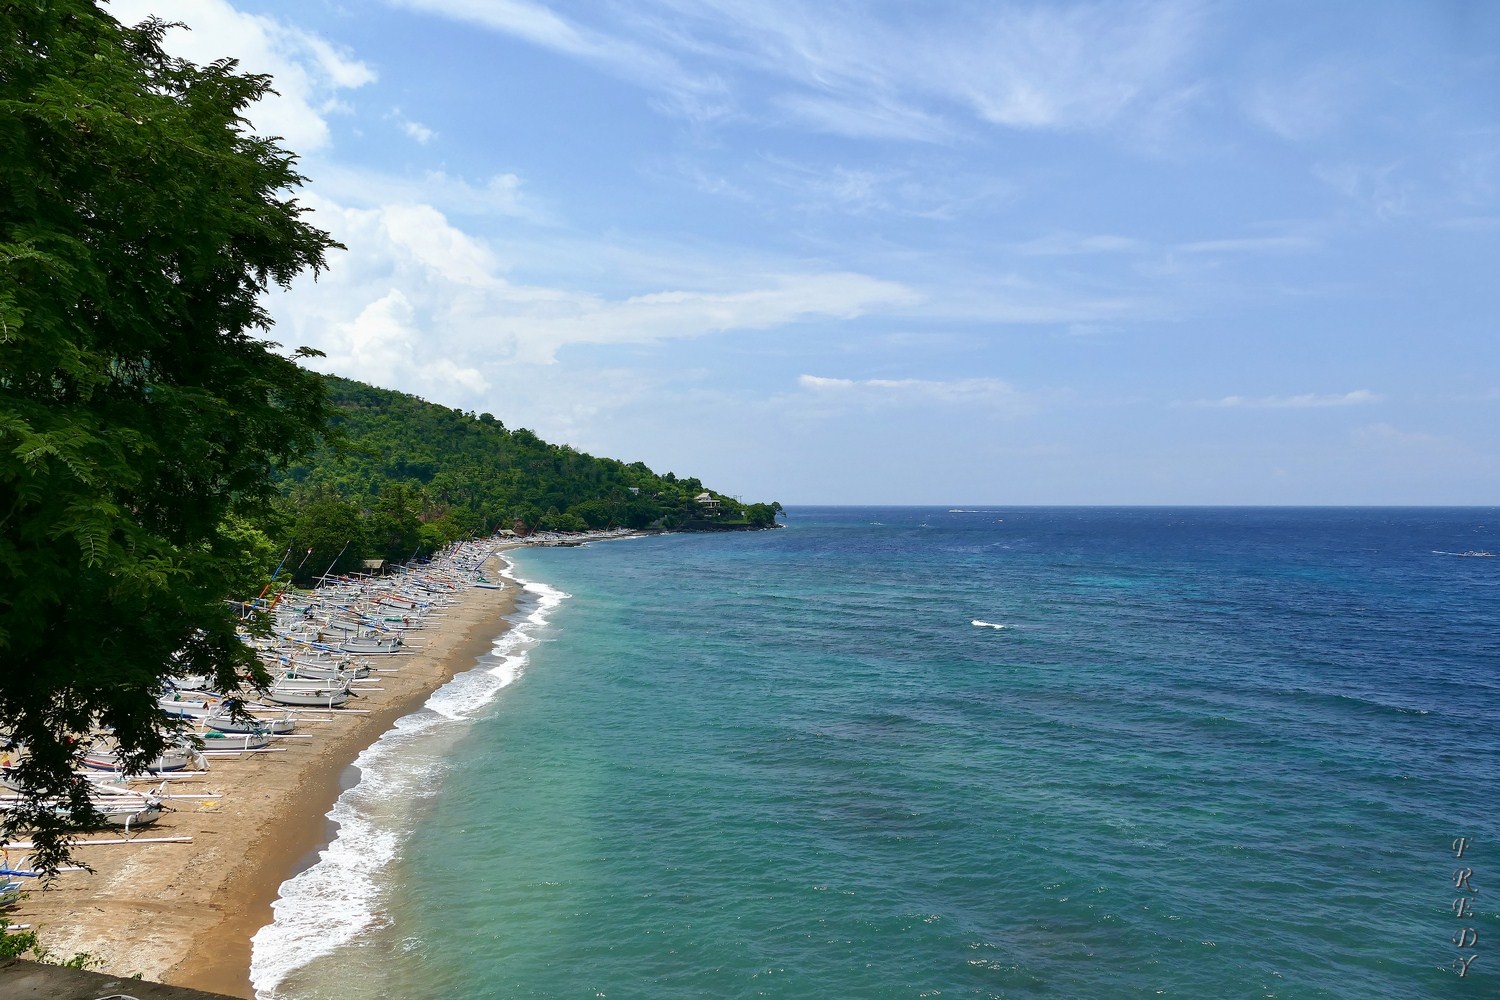 Fotografie cu Bintang Beach cu o suprafață de apă pură albastră